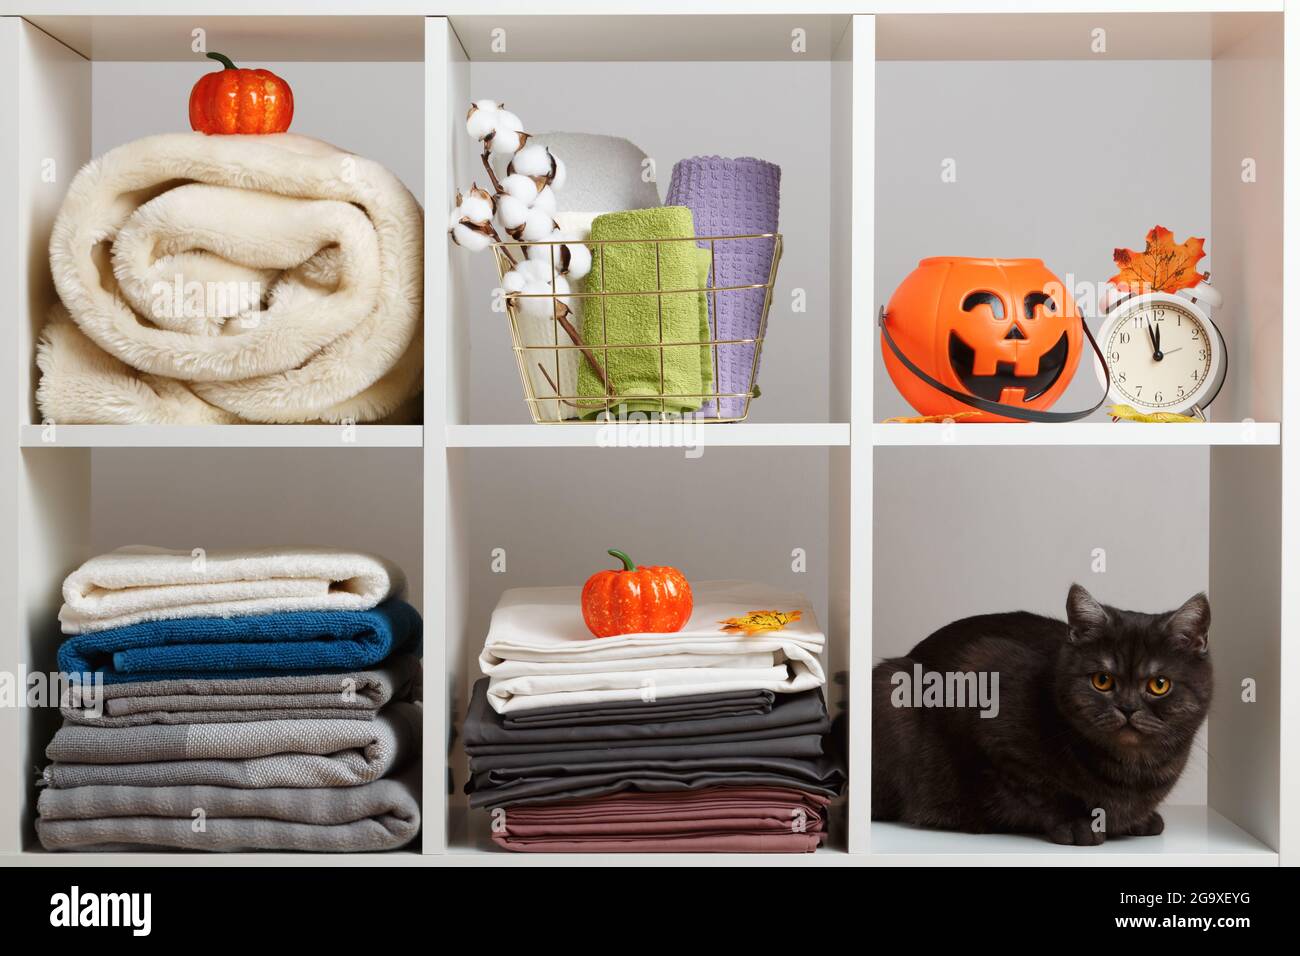 Asciugamani, lenzuola, biancheria da letto e un gatto sul ripiano. Deposito tessile e festa di Halloween. Foto Stock